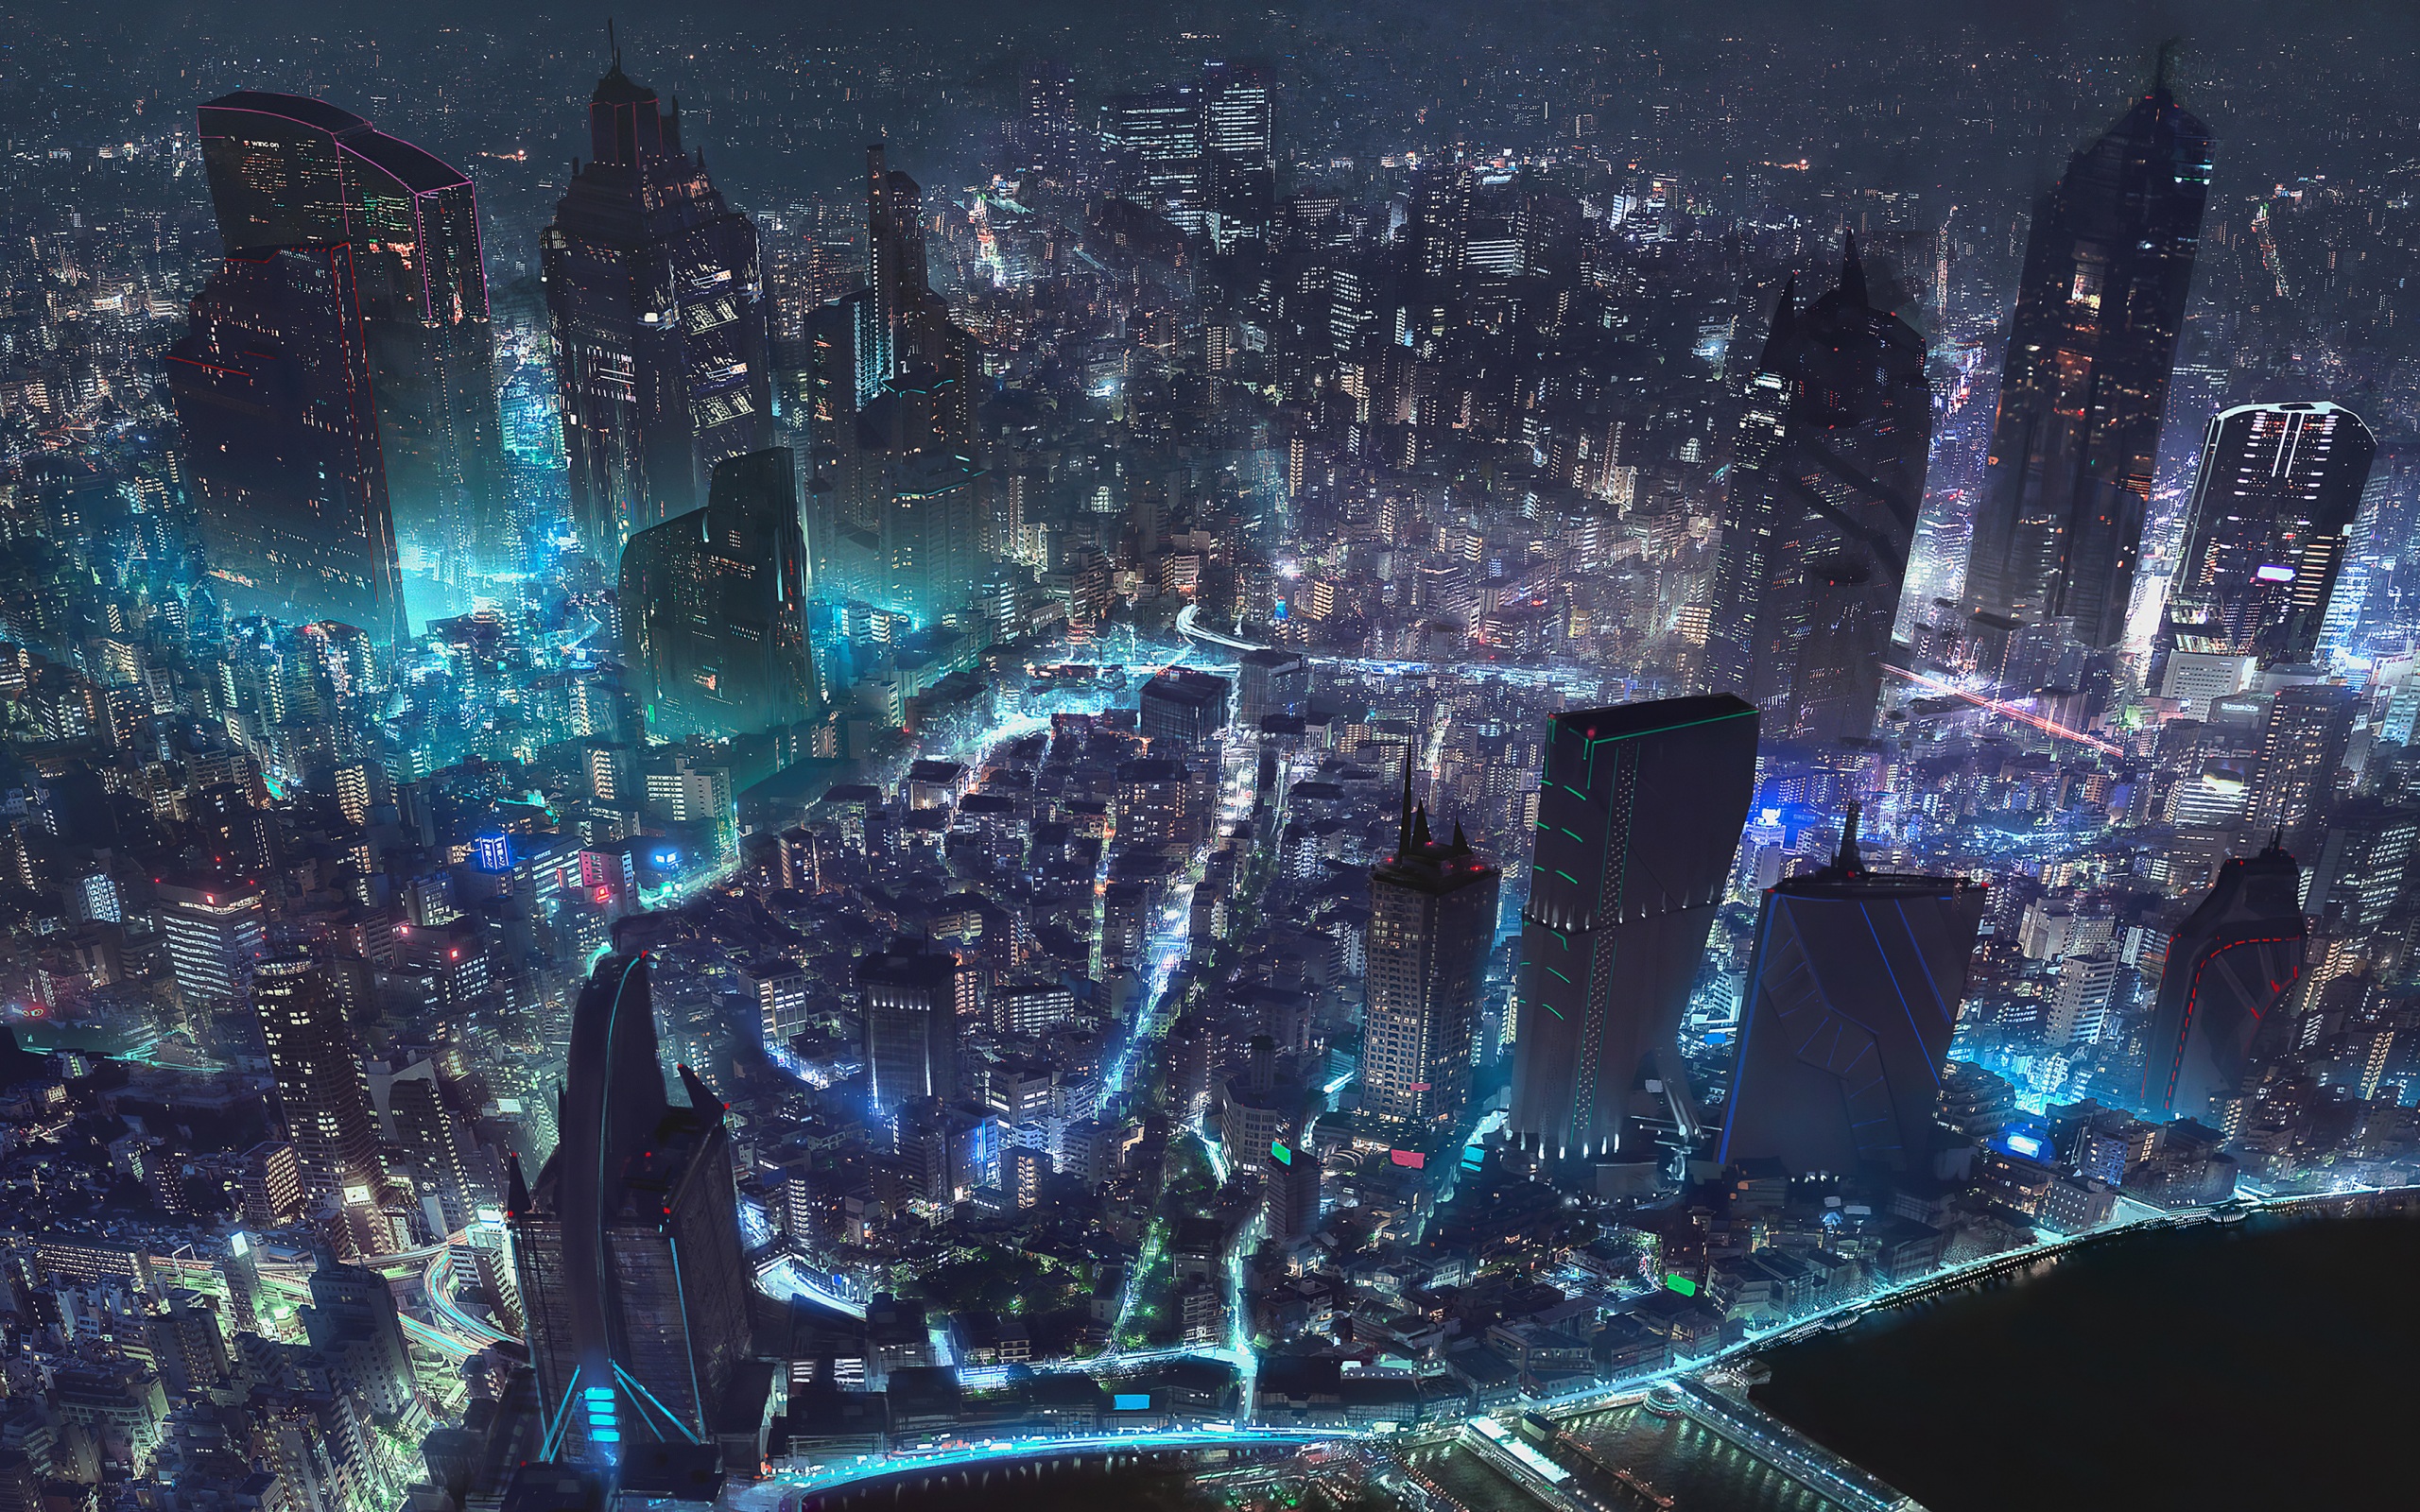 Cyberpunk city wallpaper: Trong hình ảnh này, Cyberpunk City sẽ khiến bạn cảm thấy như mình đang sống trong một thế giới đầy nhân vật và các cảnh quan ấn tượng. Tất cả đều được thiết kế rất độc đáo, khác biệt và đầy sức hút. Hãy để cho tâm trí của bạn được tái sinh trong không gian này.